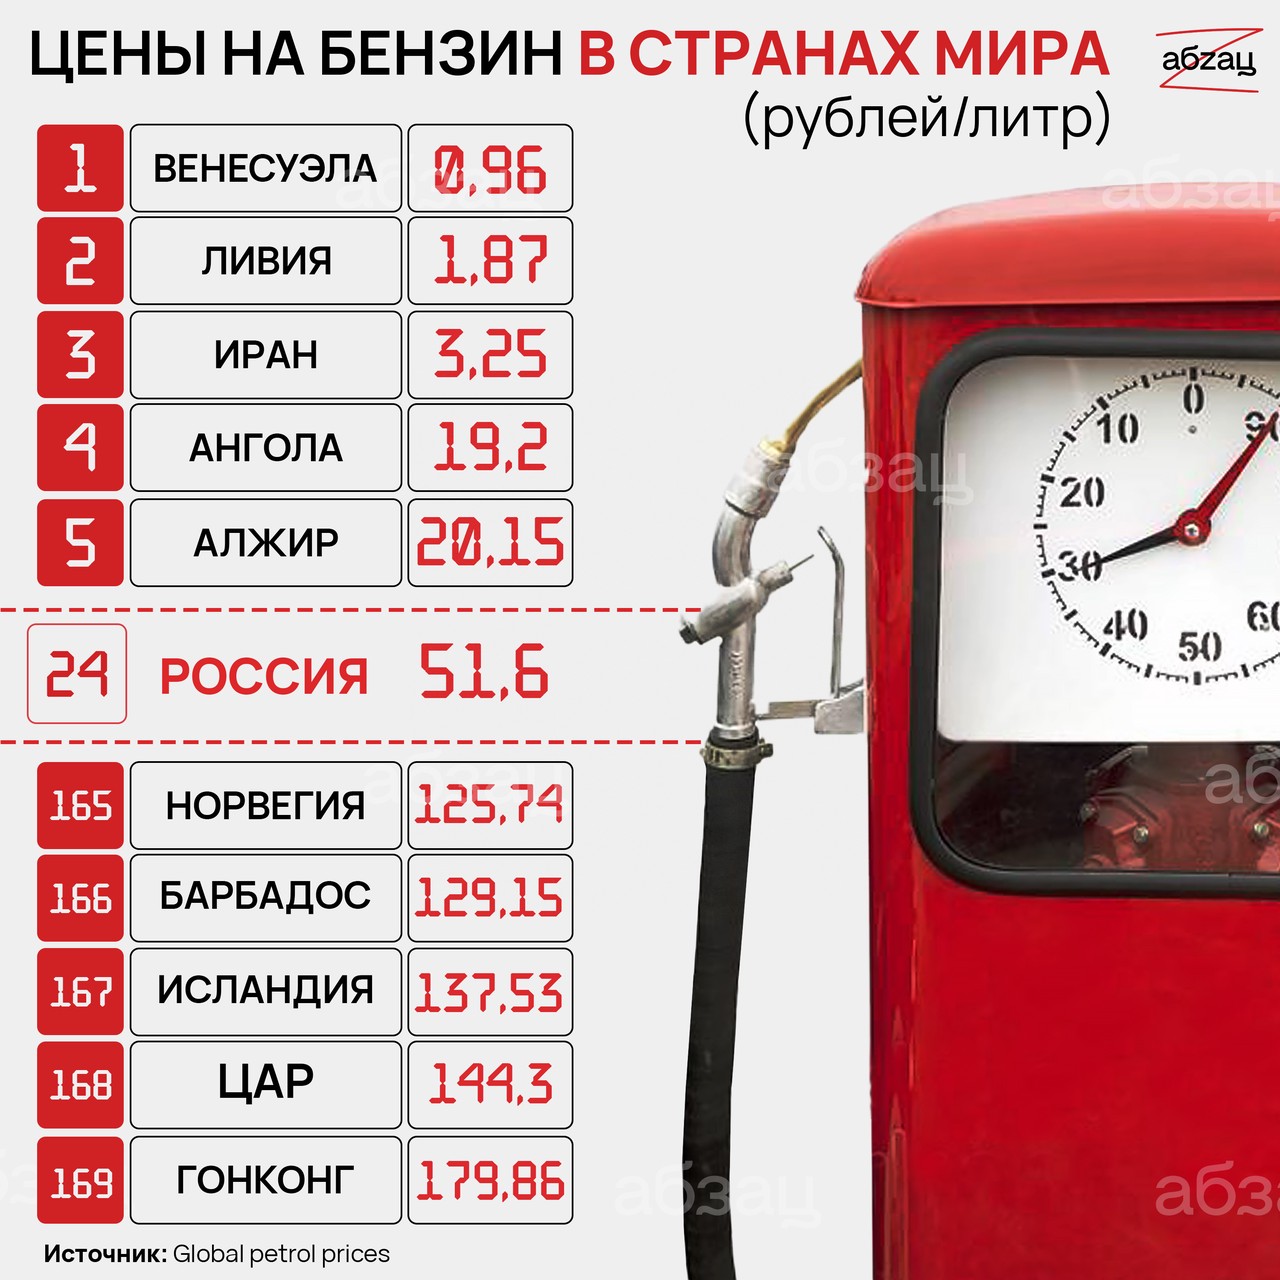 Налоги в литре: почему в Казахстане бензин стоит вдвое меньше, чем в России